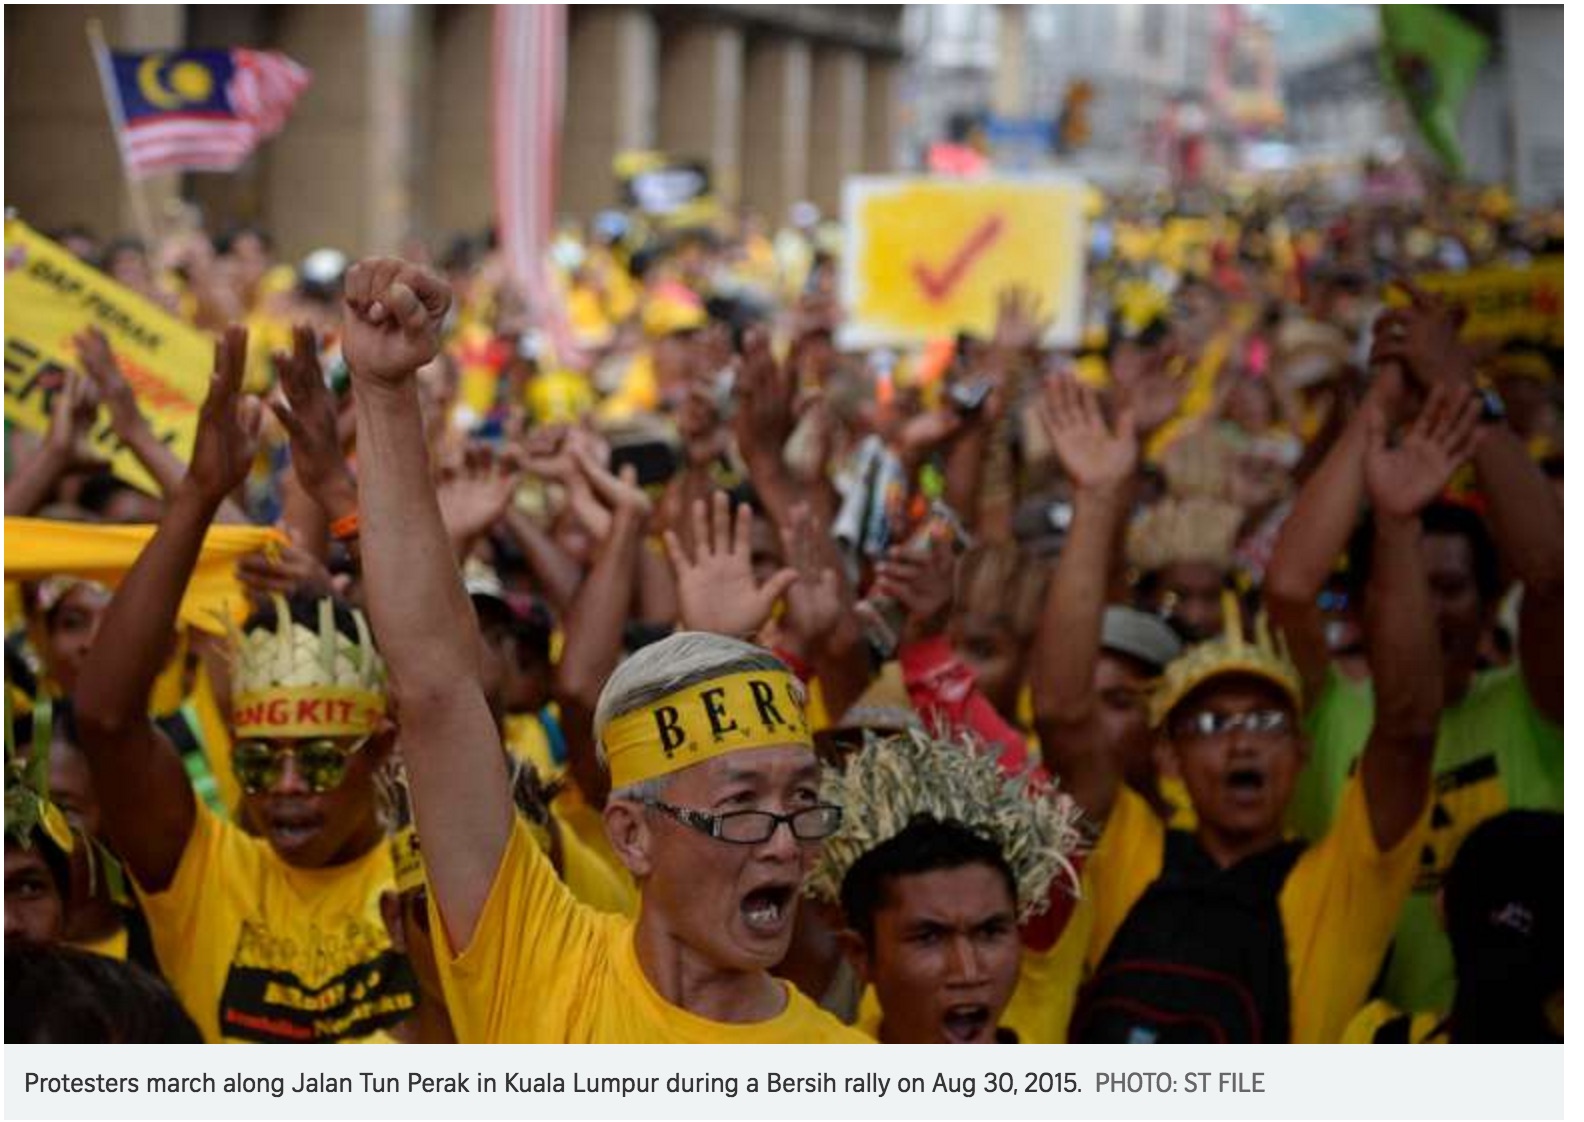 Le groupe Bersih organise des rassemblements dans 246 villes de Malaisie en octobre et appelle à la démission de Najib Razak. Copie d'écran du Straits Times, le 14 septembre 2016.